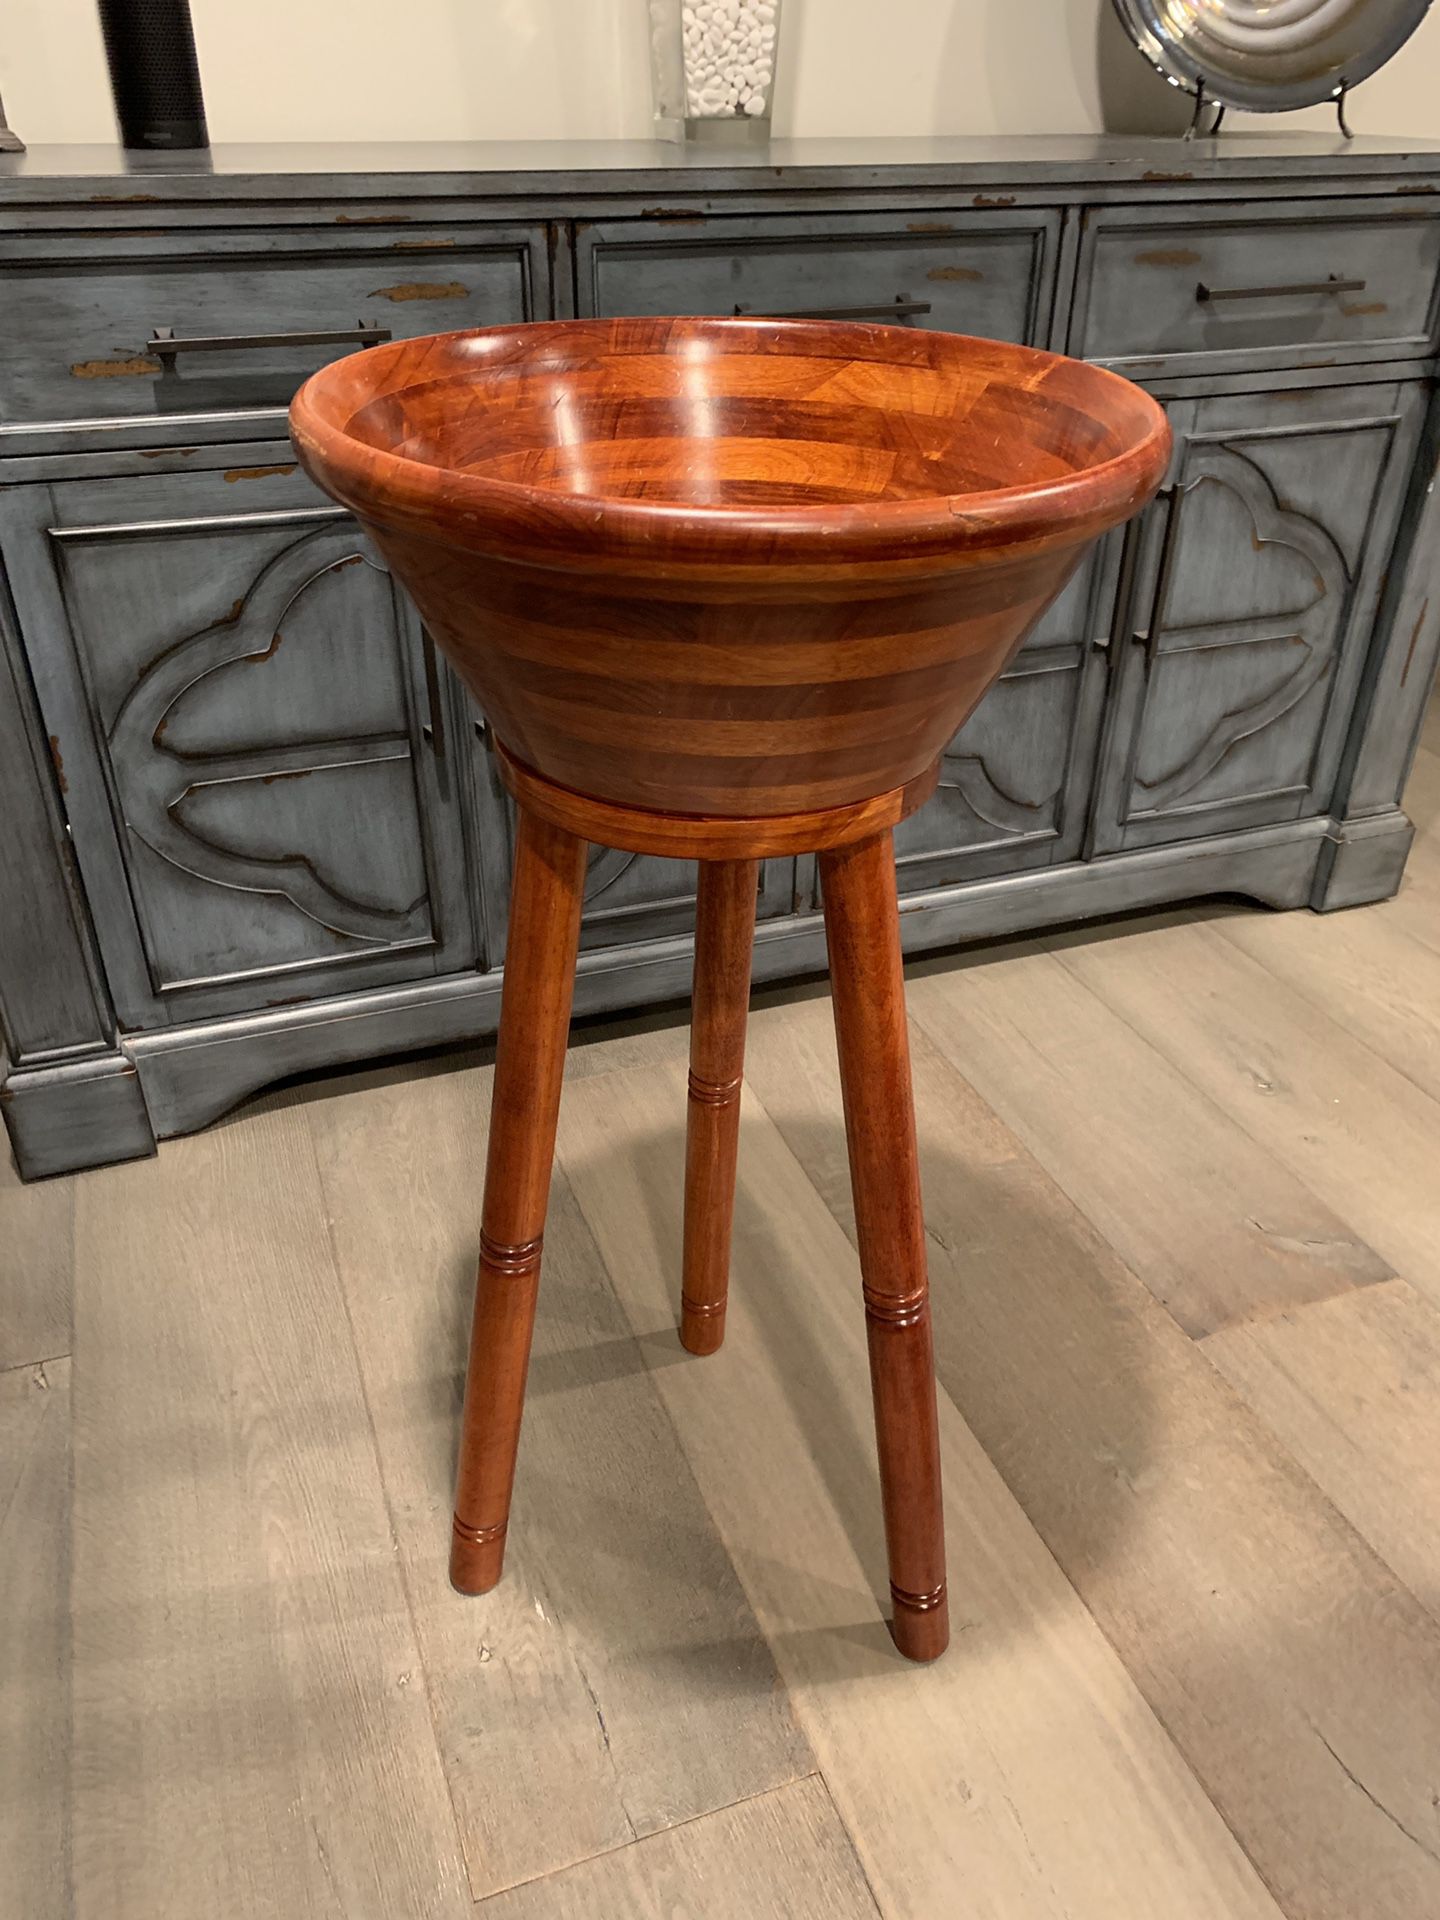 Designer Wood Tableside Serving Bowl